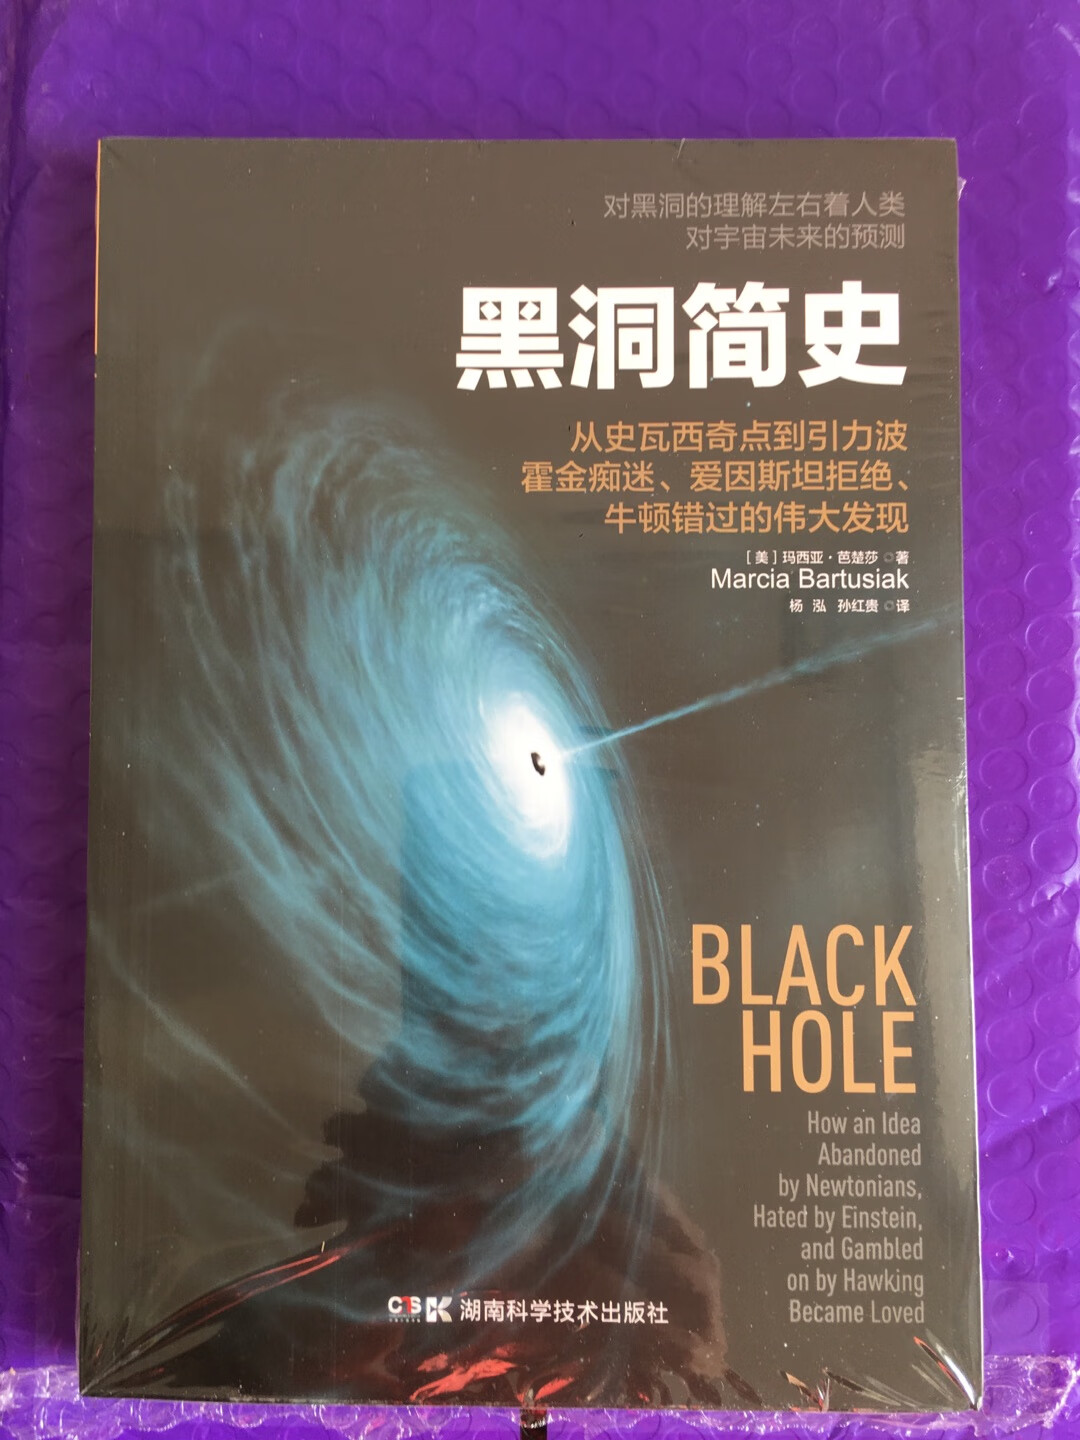 介绍黑洞的历史科普读物 讲了黑洞概念不断完善 越来越愿意被人理解 相信未来黑洞可以被完全解释的书 有不理解的地方 但看起来很有意思